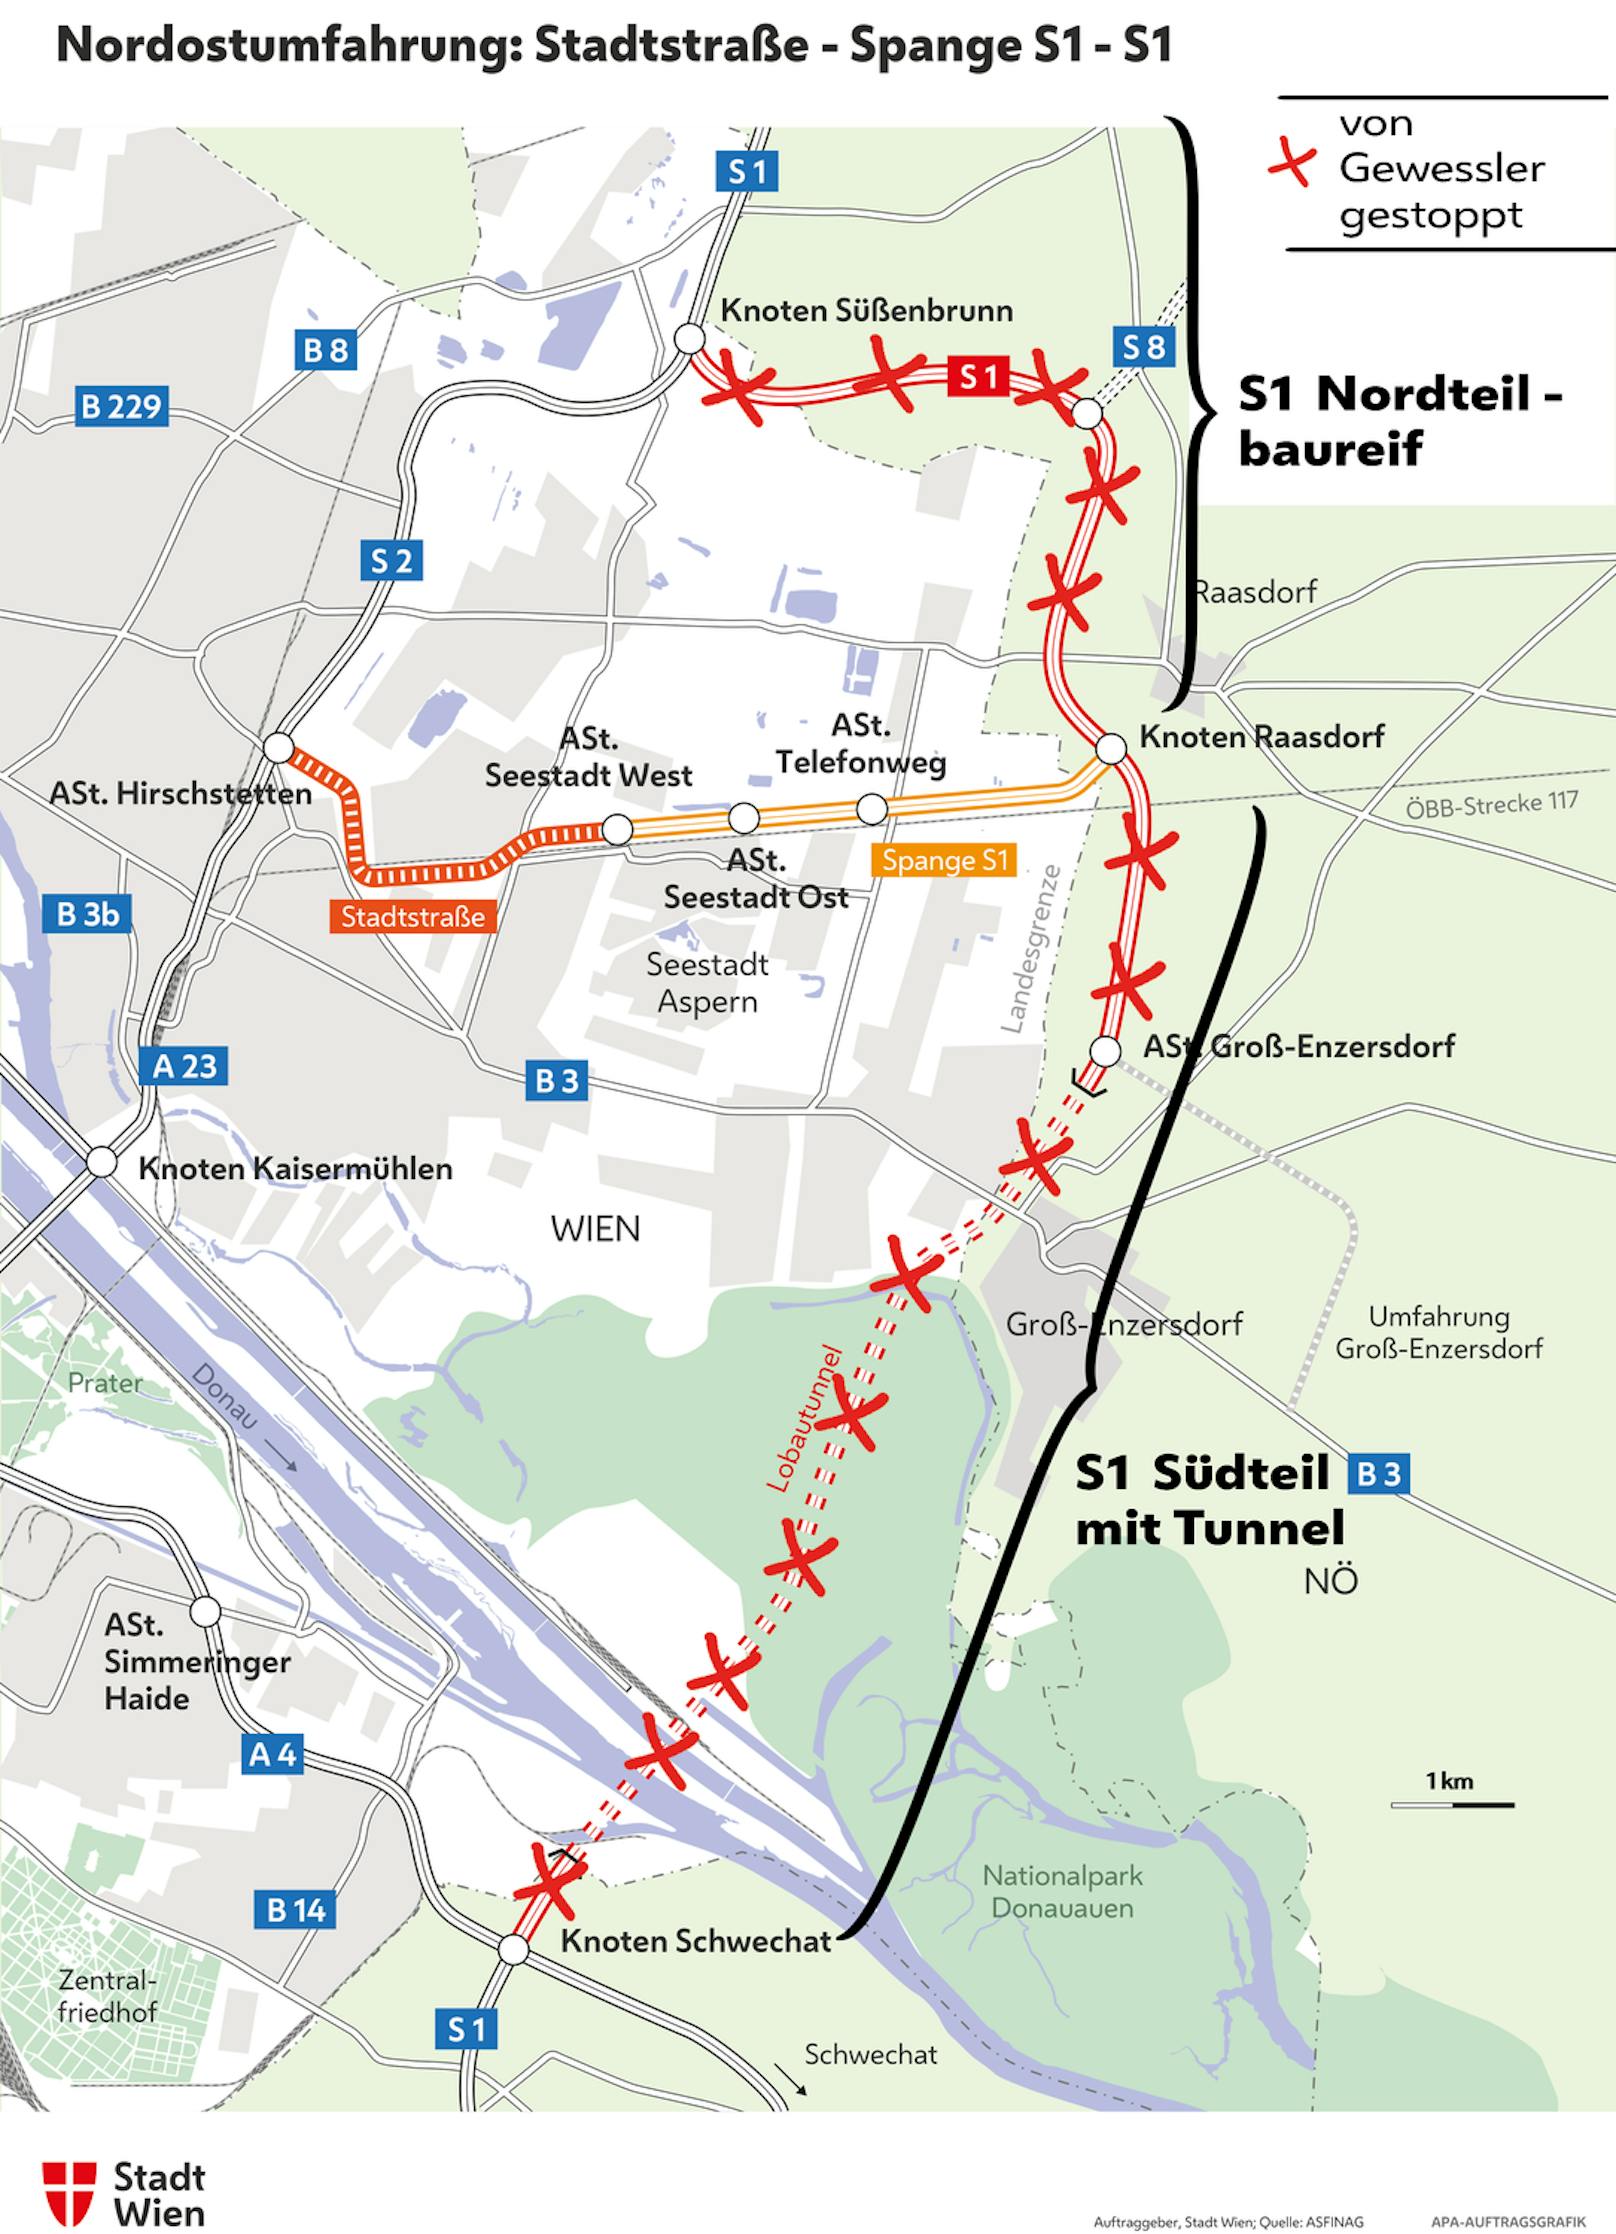 Die Wiener Nordostumfahrung: Was kommt und was (vorerst) nicht: Gebaut werden kann die Stadtstraßen und die S1-Spange bis Raasdorf. Dort enden aber die Pläne.